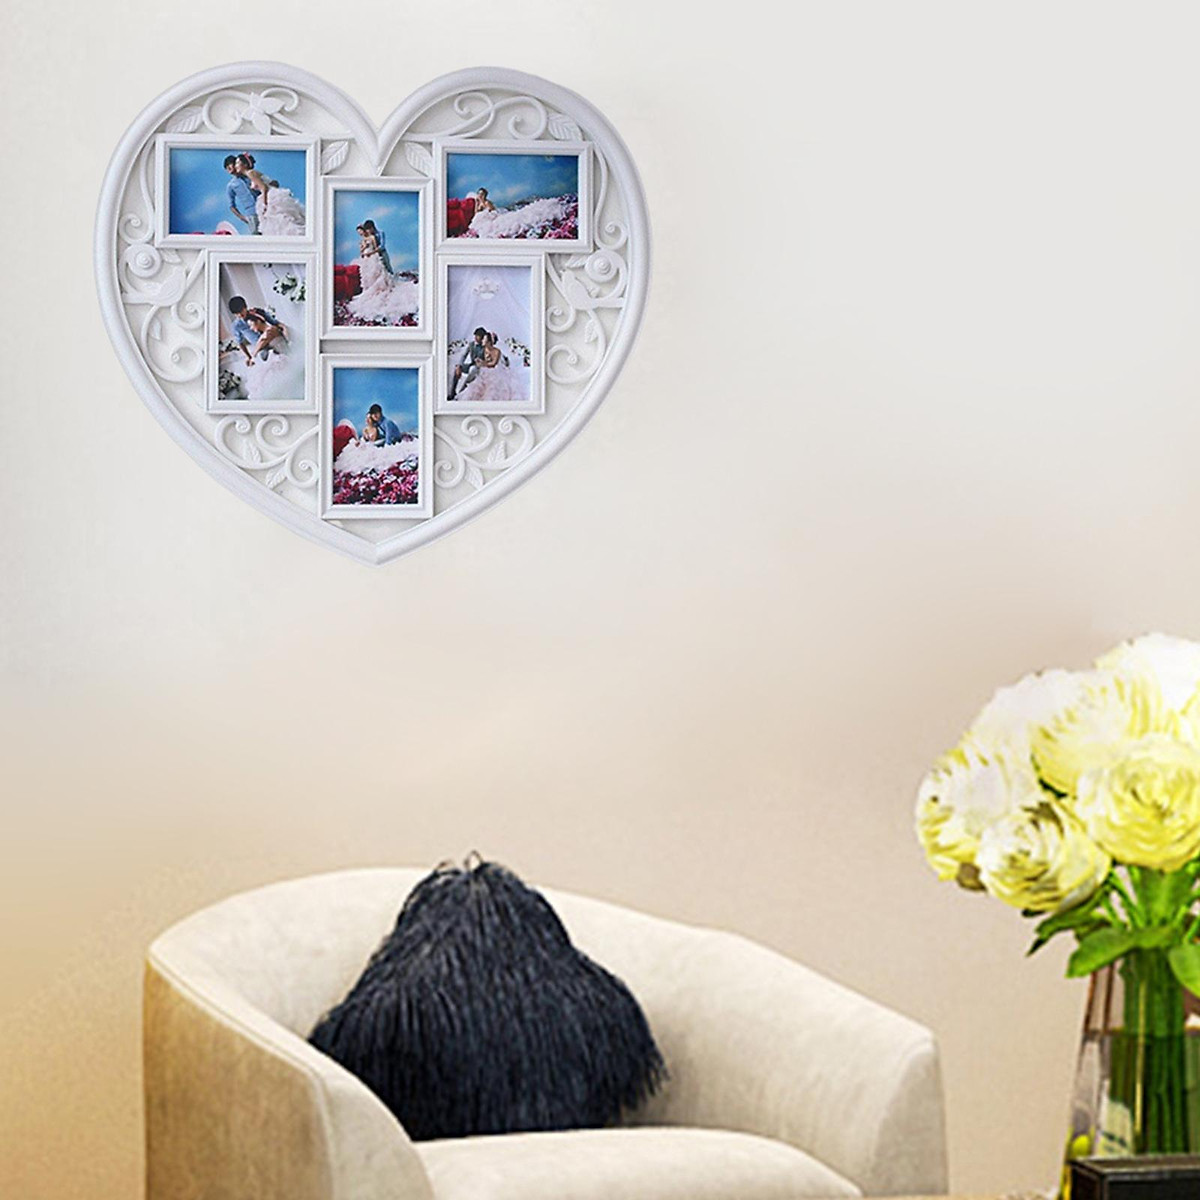 Với những mảng trang trí tường hình trái tim tuyệt đẹp này, bạn sẽ truyền tải về tình yêu và lãng mạn. Các mẫu mã đa dạng và độc đáo, cùng với những gam màu từ nhẹ nhàng tới rực rỡ sẽ đem lại cho ngôi nhà của bạn một vẻ đẹp mới lạ và tươi vui.